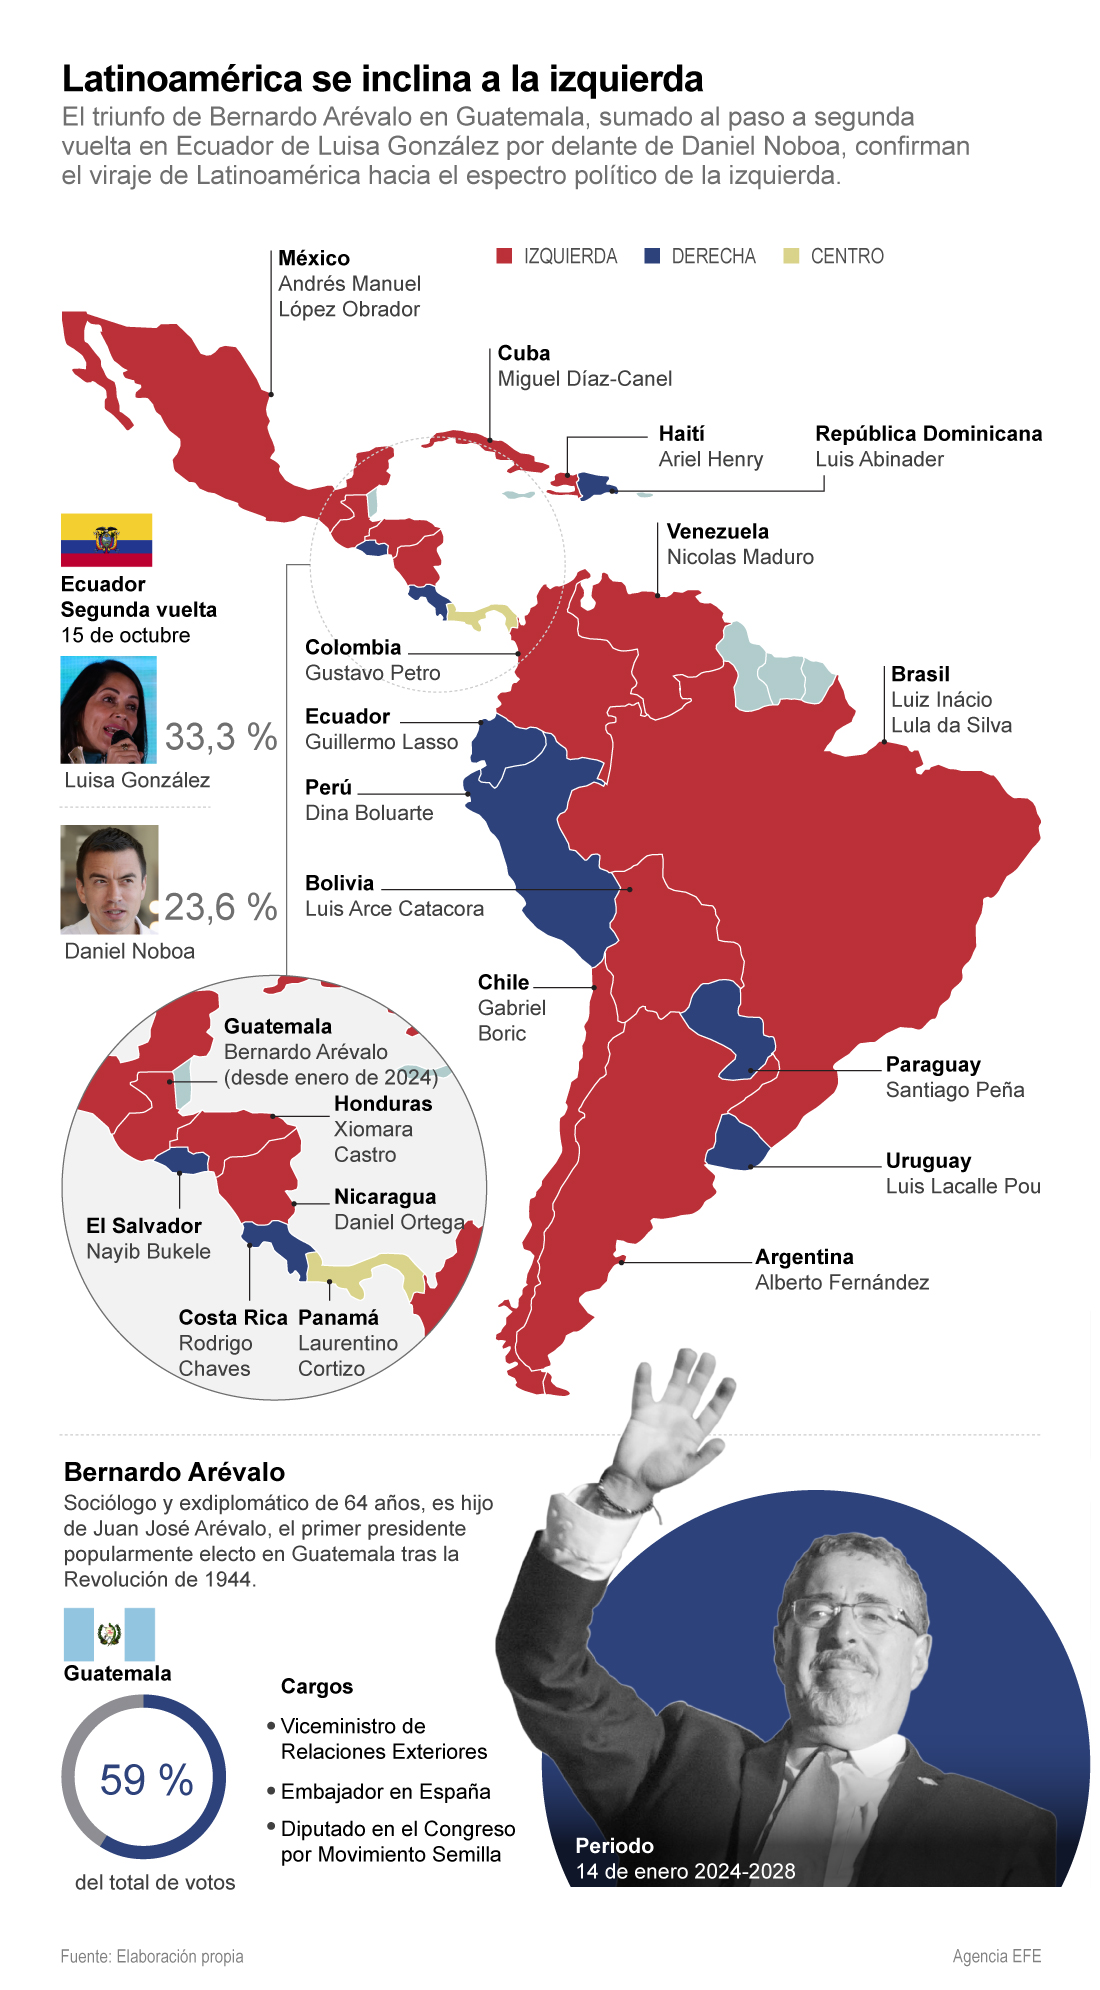 Los resultados de las elecciones de Guatemala y de la primera vuelta en Ecuador generan expectativa en una región con una mayoría de gobiernos progresistas.